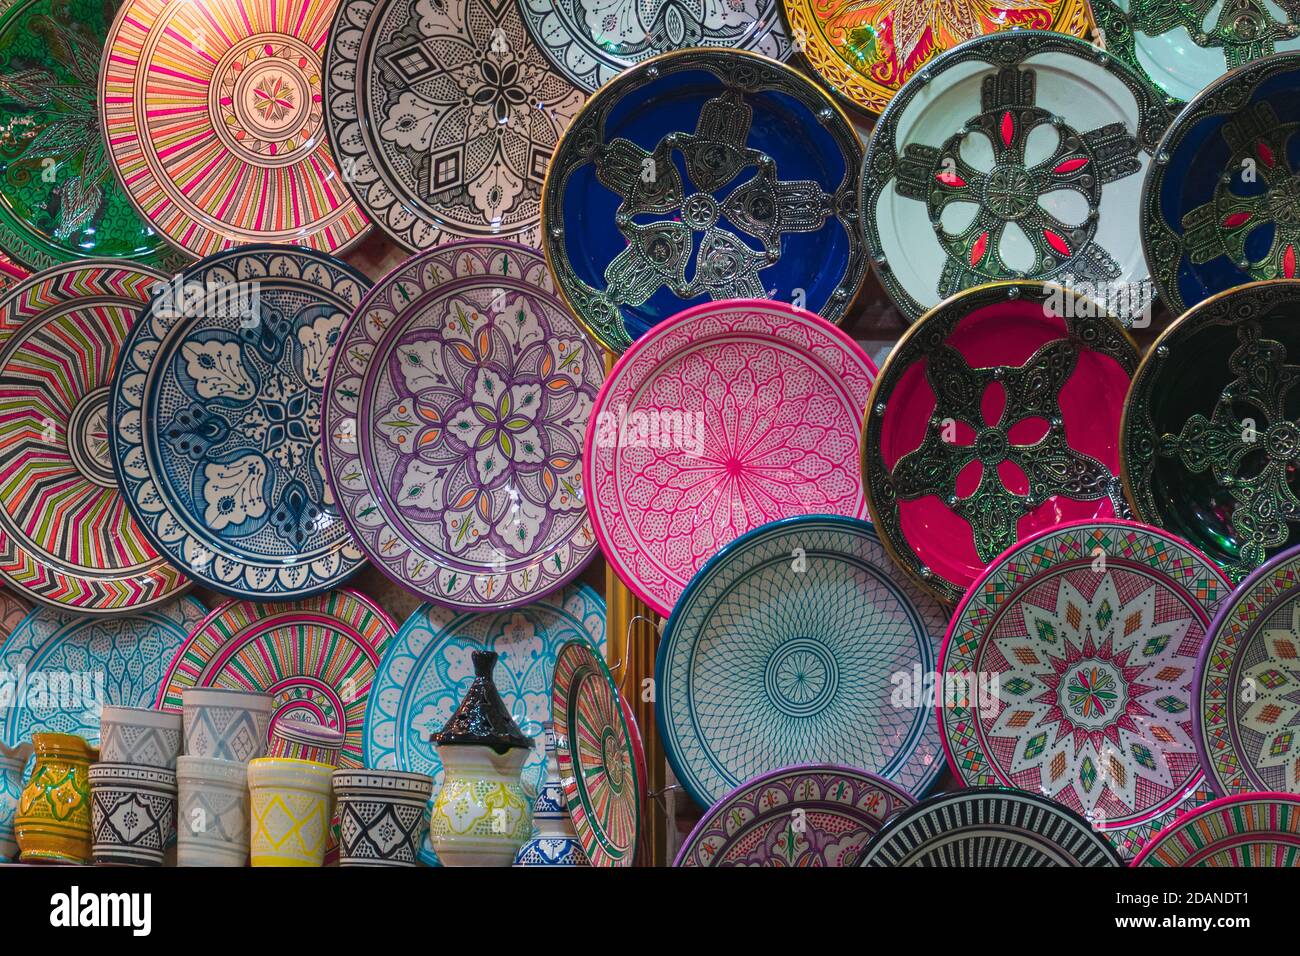 Dettaglio di ceramiche colorate nei mercati della medina di Marrakech, Marocco. Foto Stock